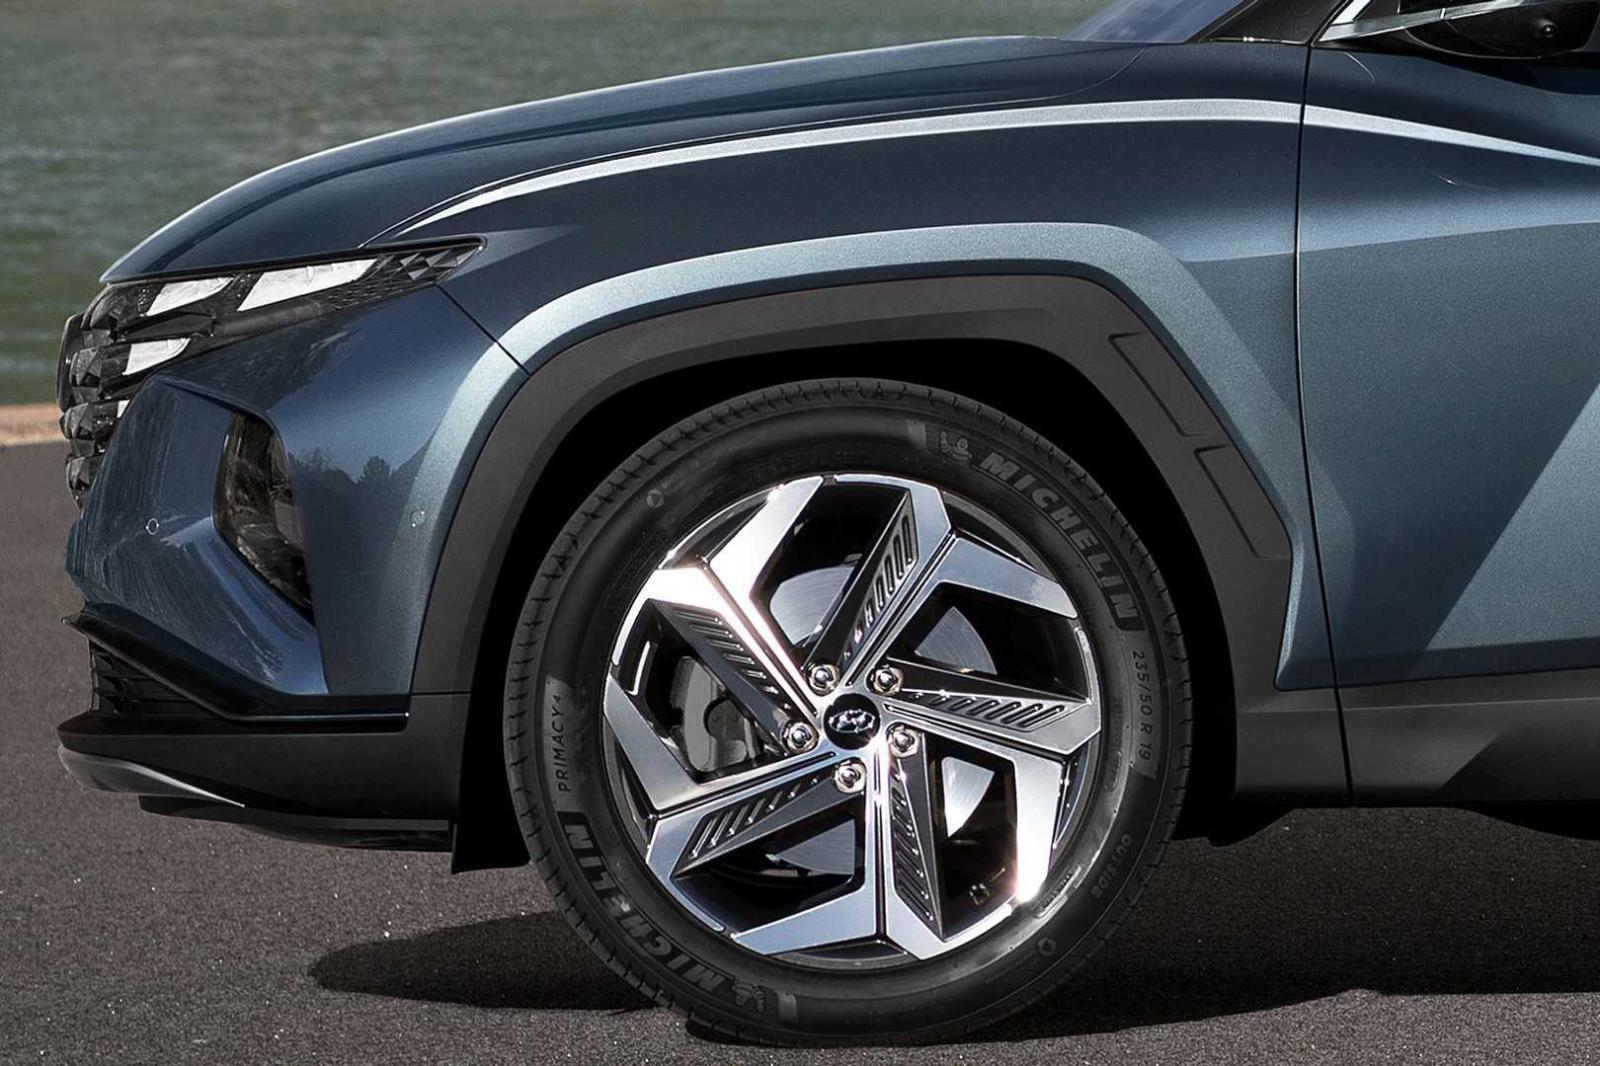 Đánh giá xe Hyundai Tucson 2021 về thiết kế thân xe - Ảnh 1.